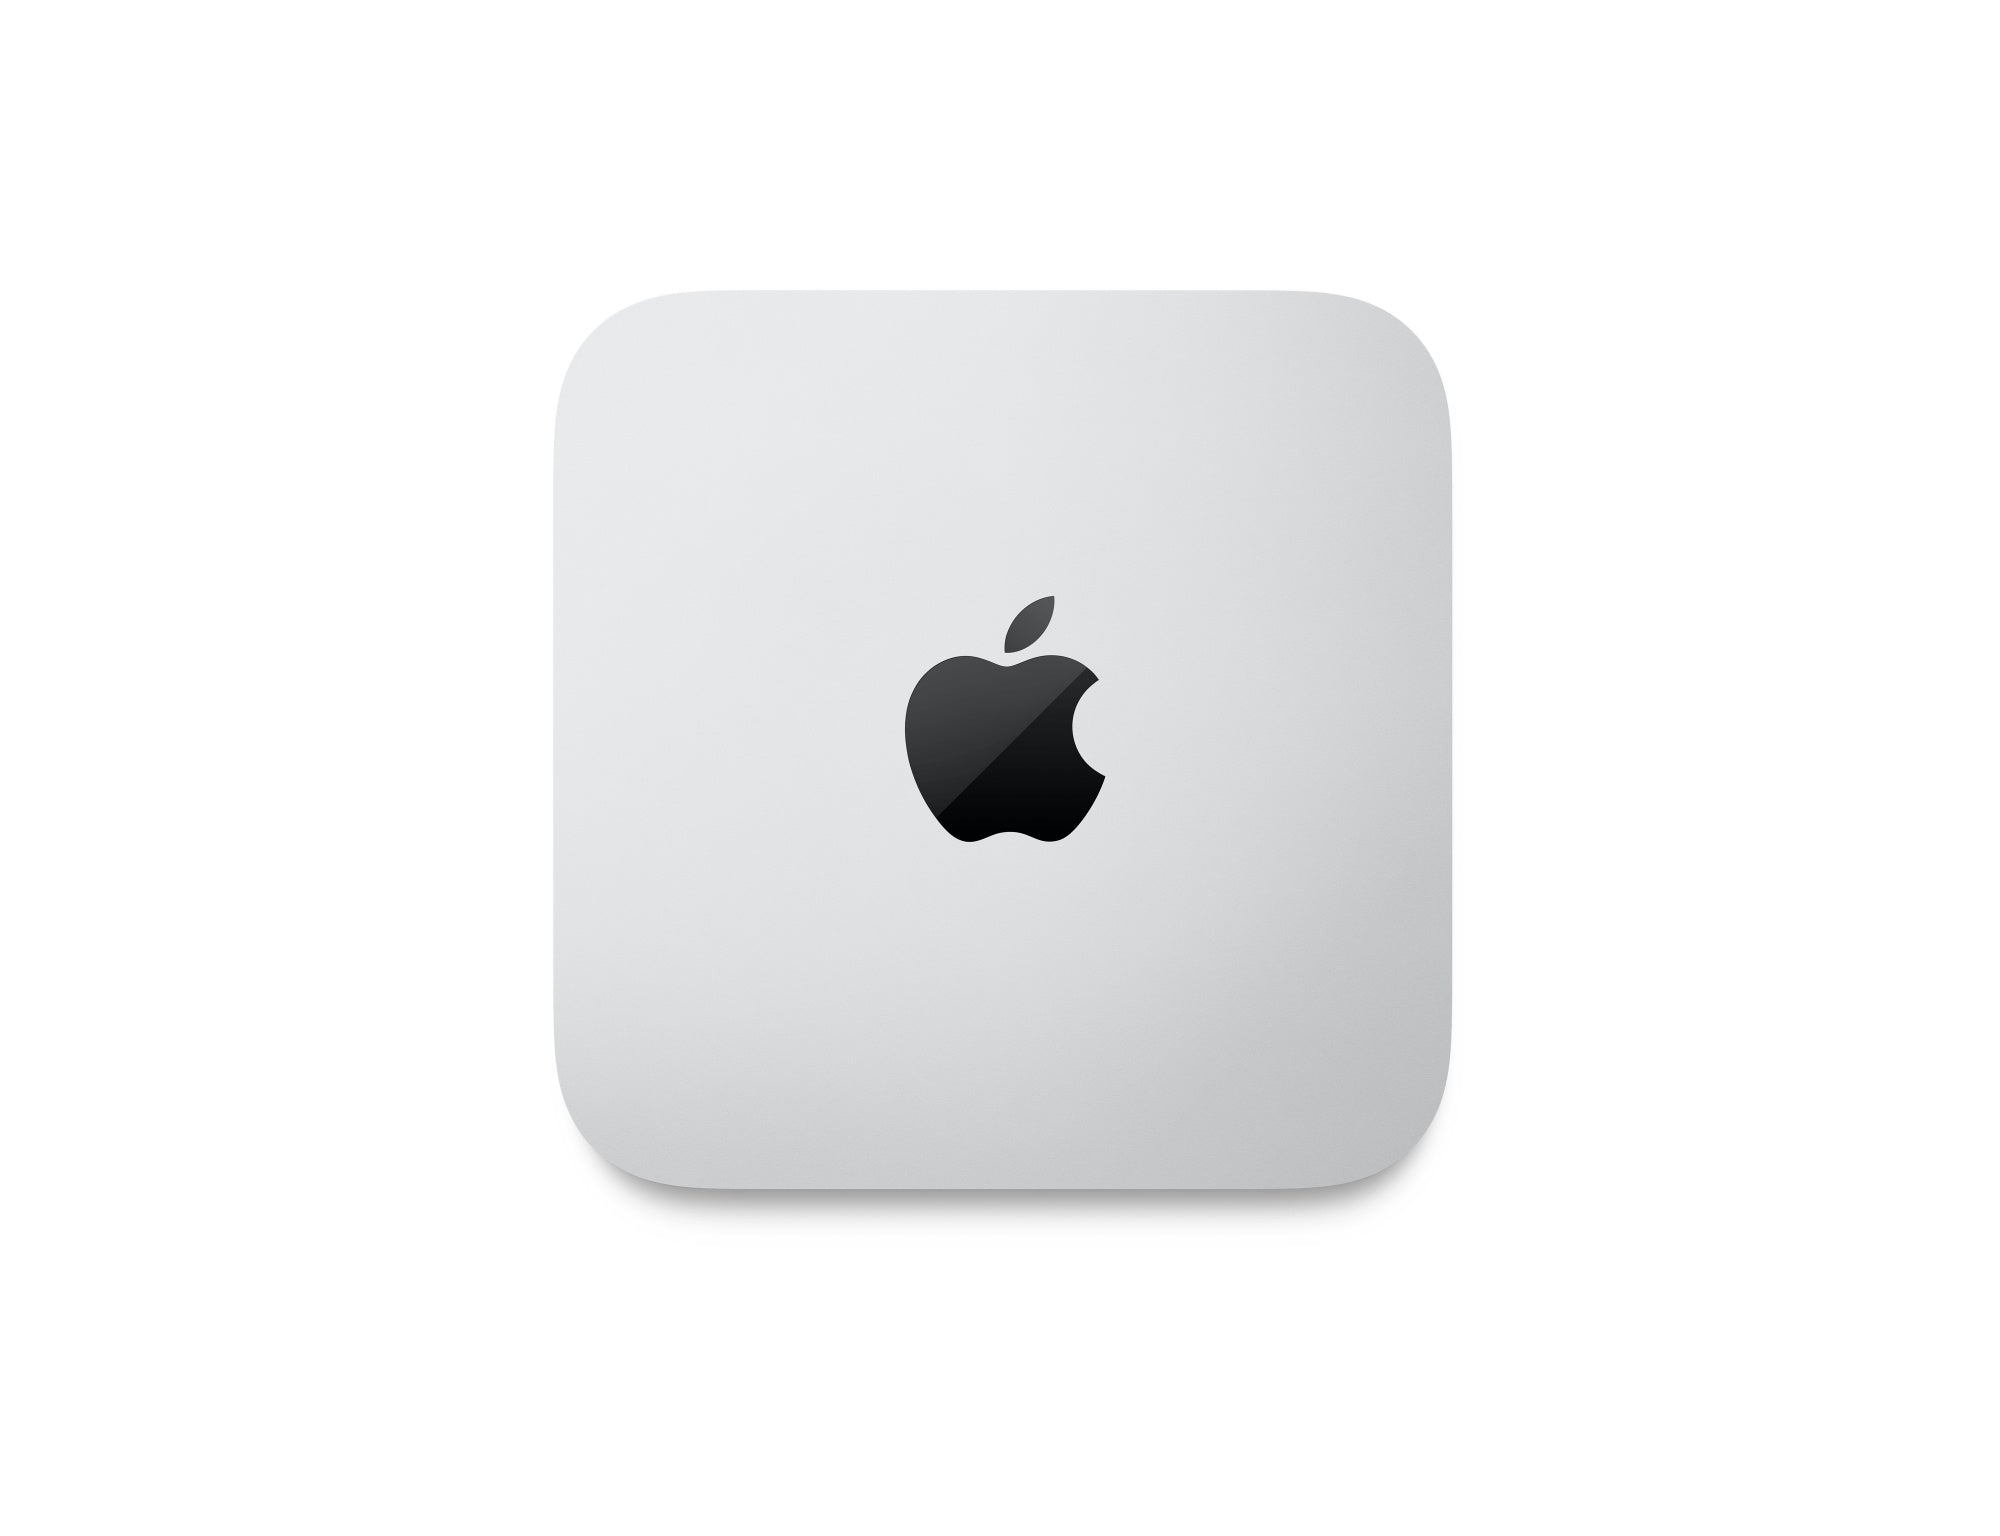 Mac Studio: Apple M2 Ultra chip with 24-core CPU, 60-core GPU, 1TB SSD